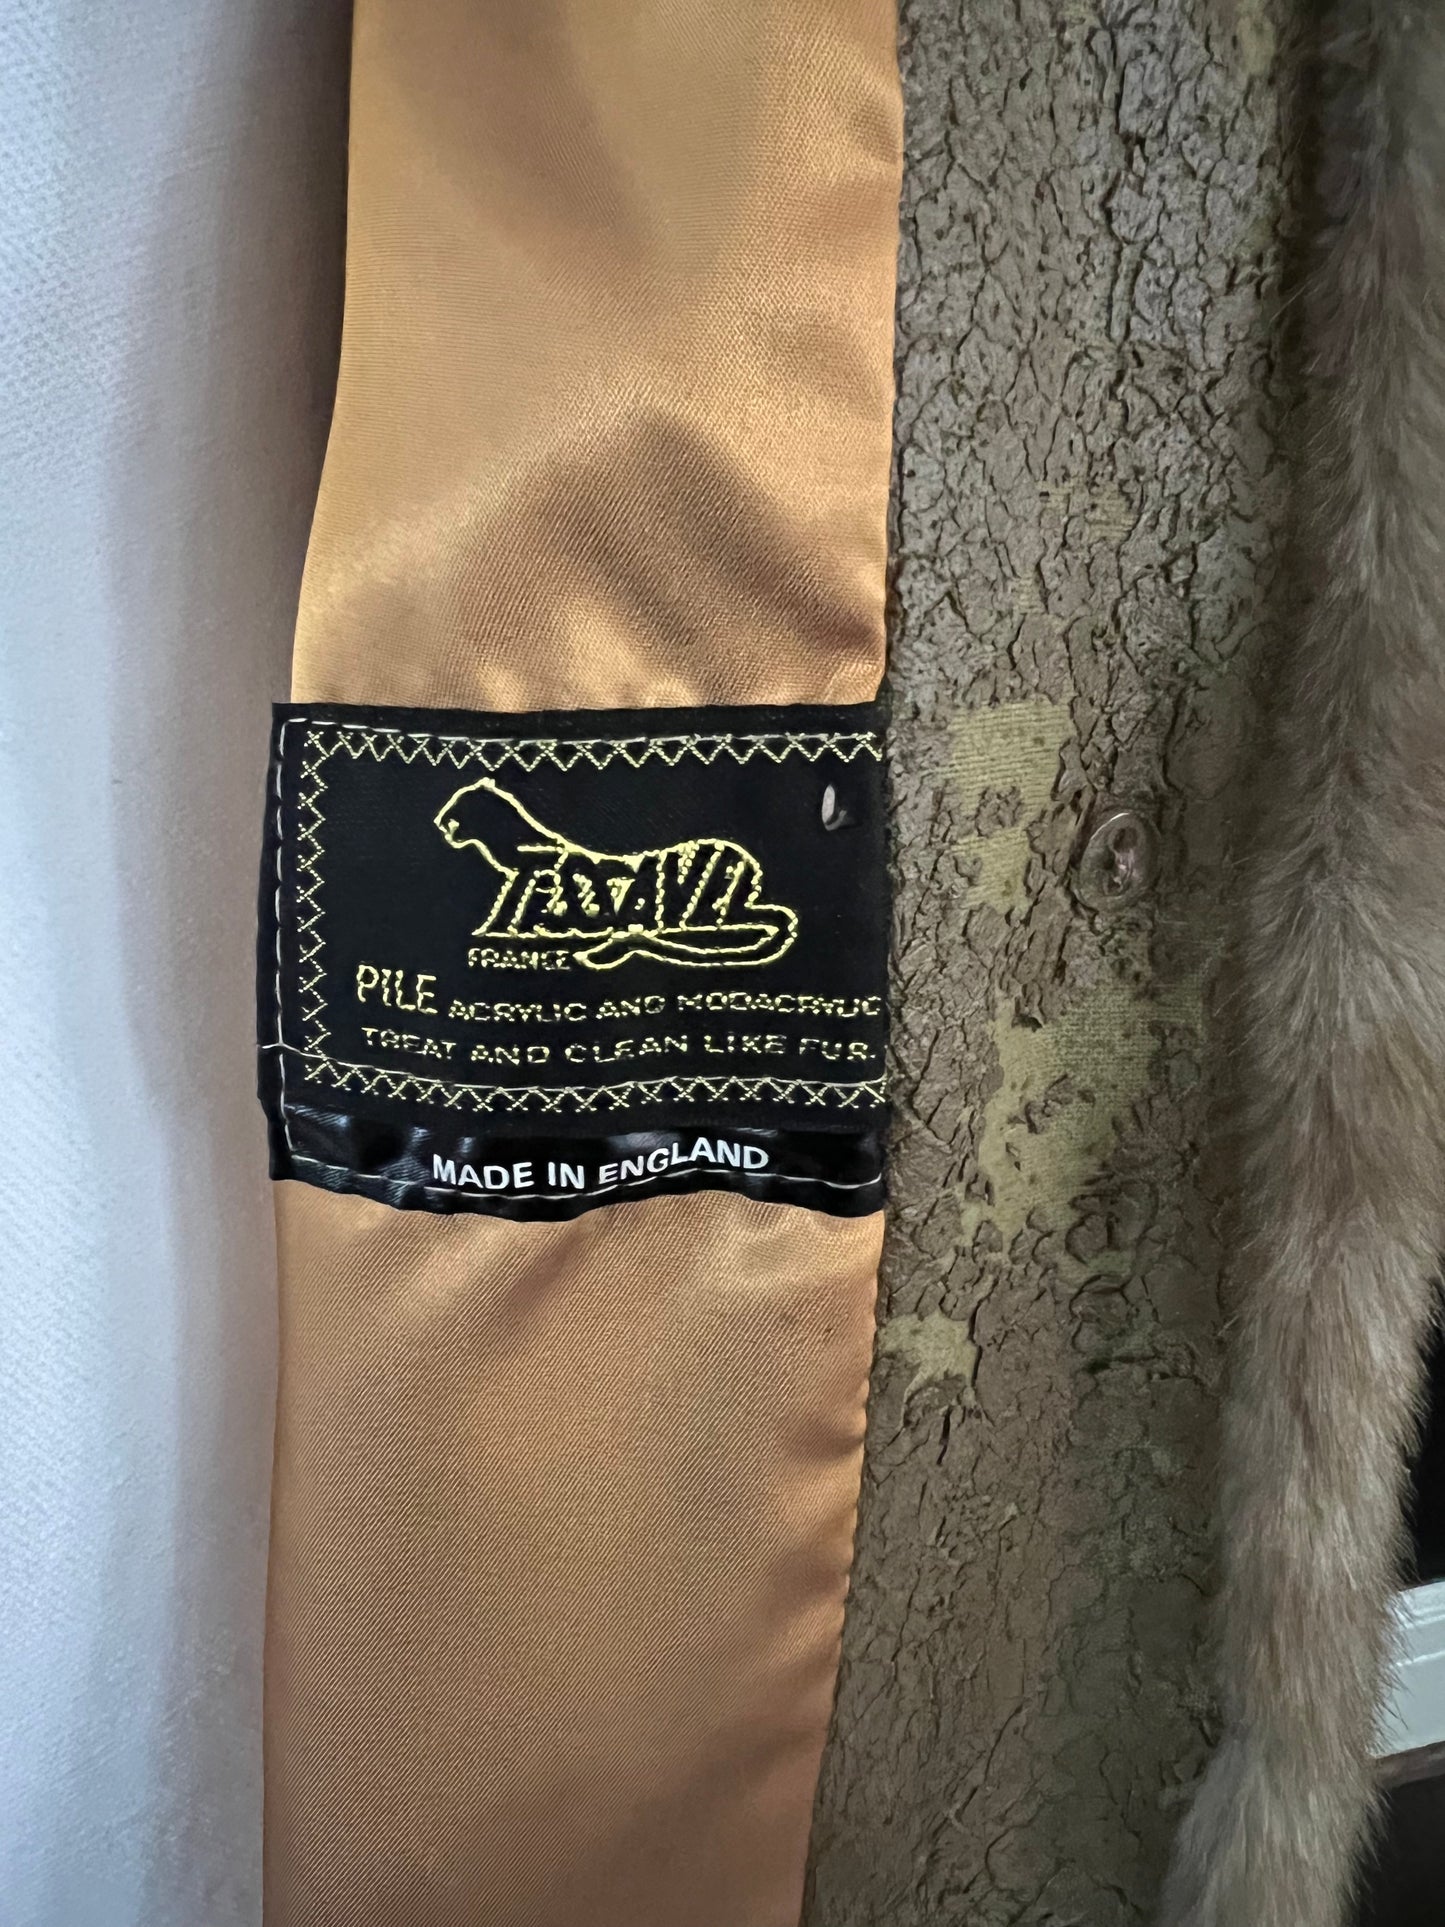 Vintage Tissavel Faux Fur Coat